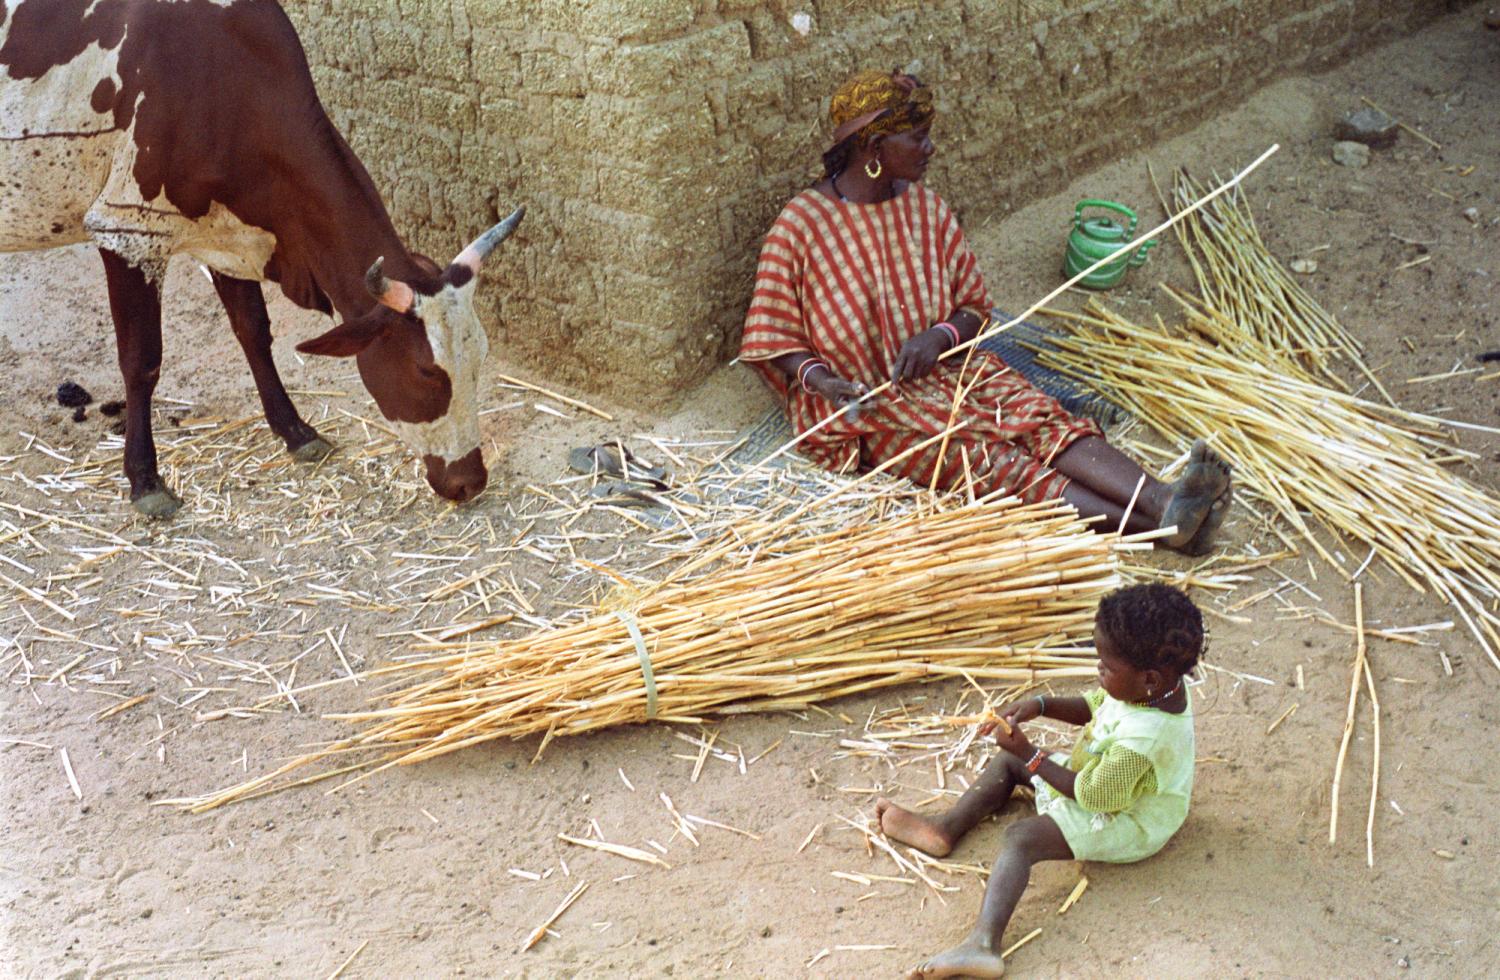 A l'ombre d'un mur, Rakia élague des cannes de mil, sa petite-fille joue avec les miettes qu'une vache broute de son côté. Bosseye Dogabe, Burkina Faso, mai 2008.